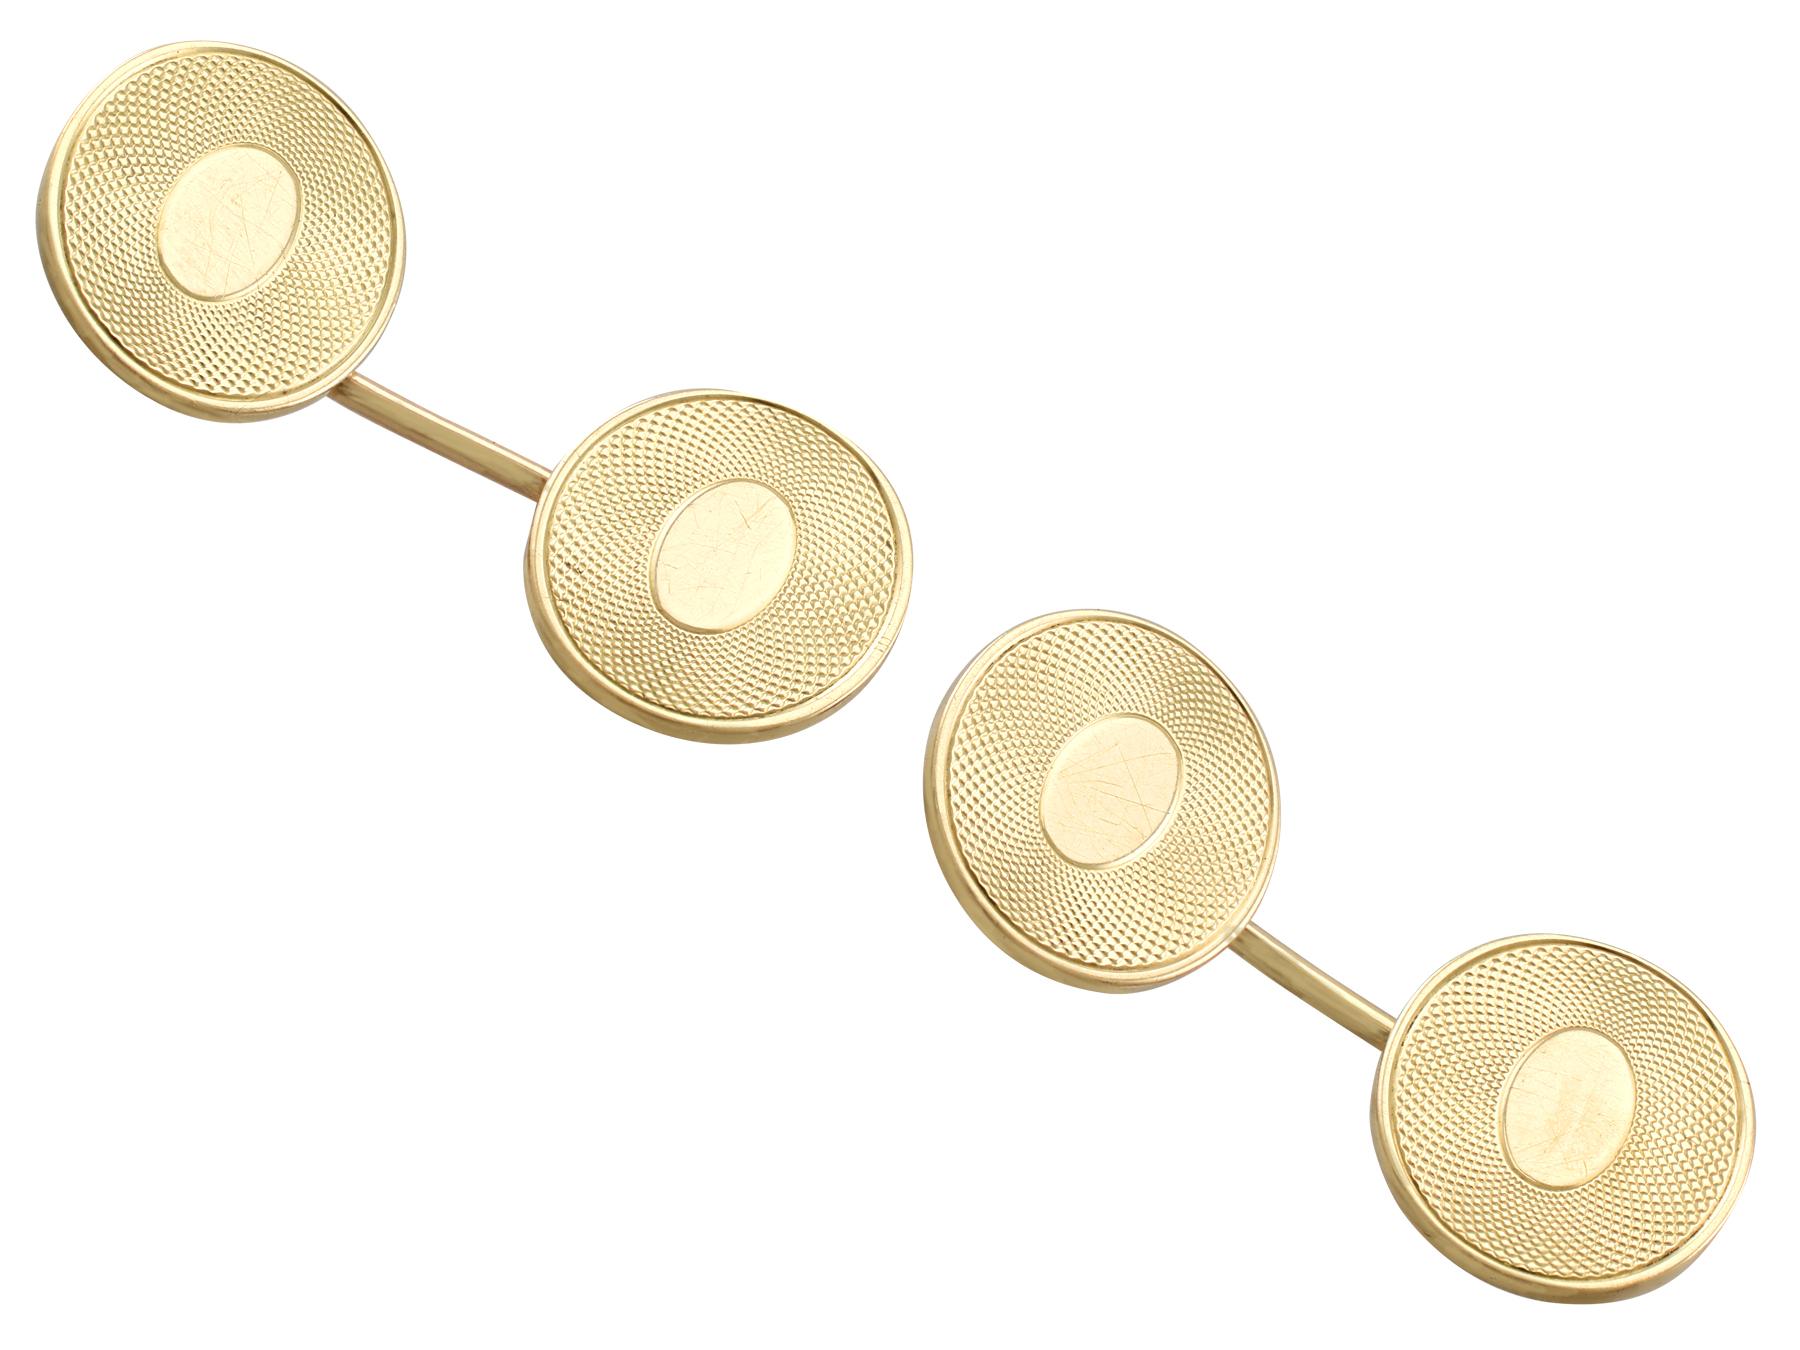 Une paire impressionnante de boutons de manchette pour homme, en or jaune 15 carats, tournés à la machine, de style victorien ; une partie de nos diverses collections de bijoux anciens et de bijoux de succession.

Ces boutons de manchette victoriens